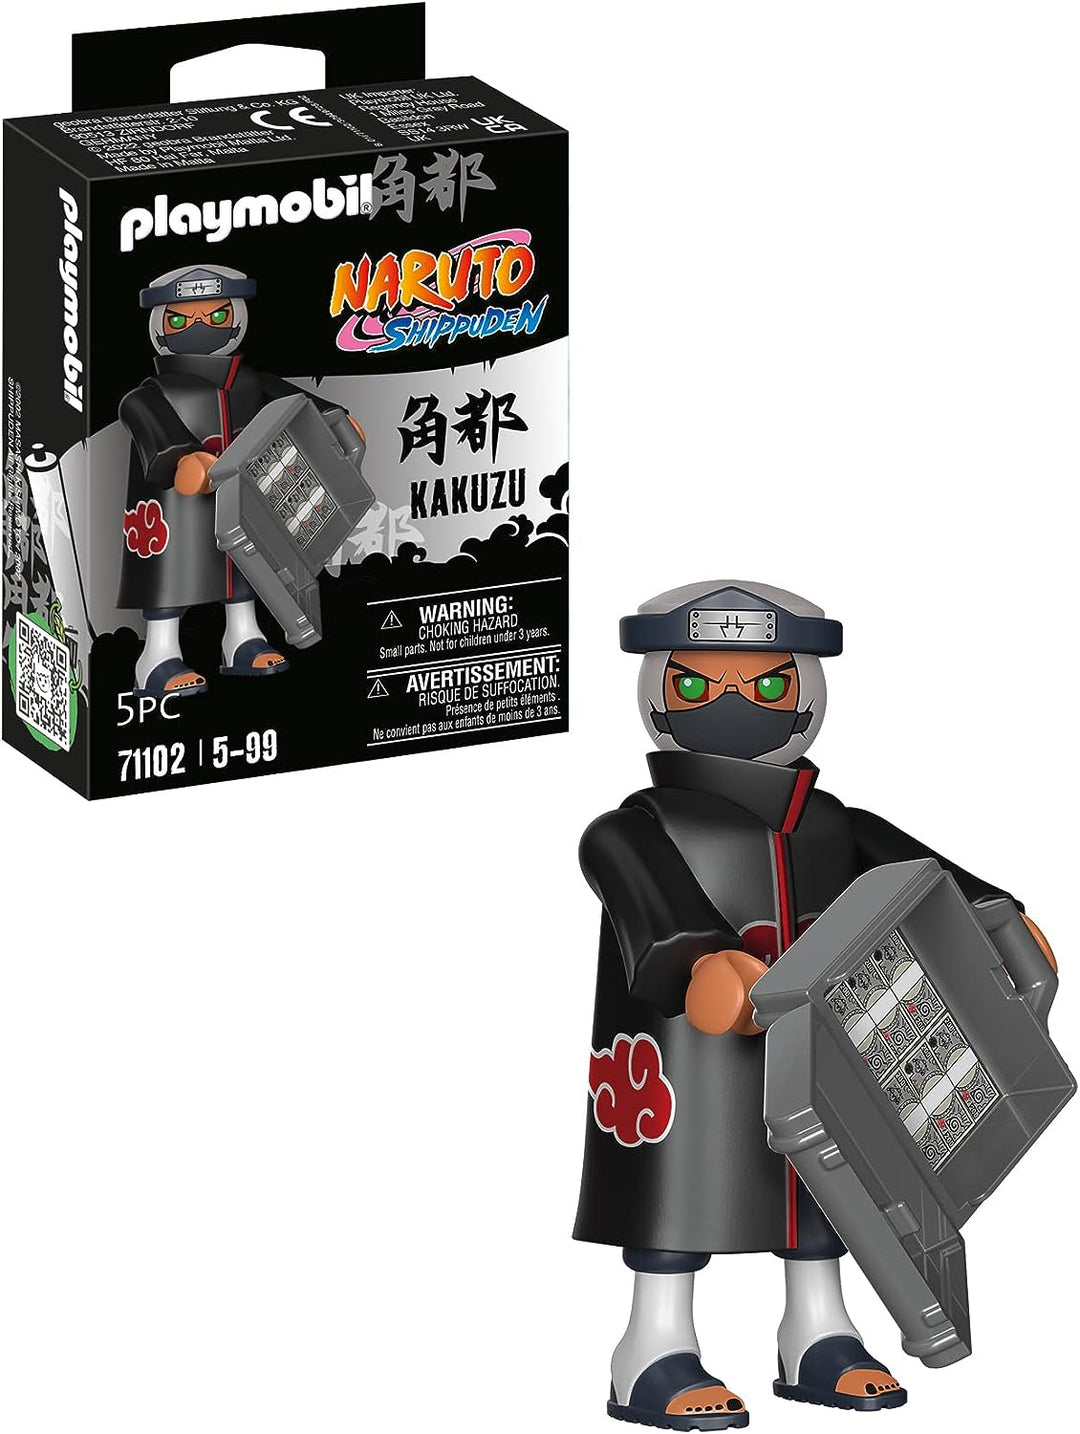 Playmobil 71102 Naruto: Kakuzu Figure Set, Naruto Shippuden anime collectors Figure